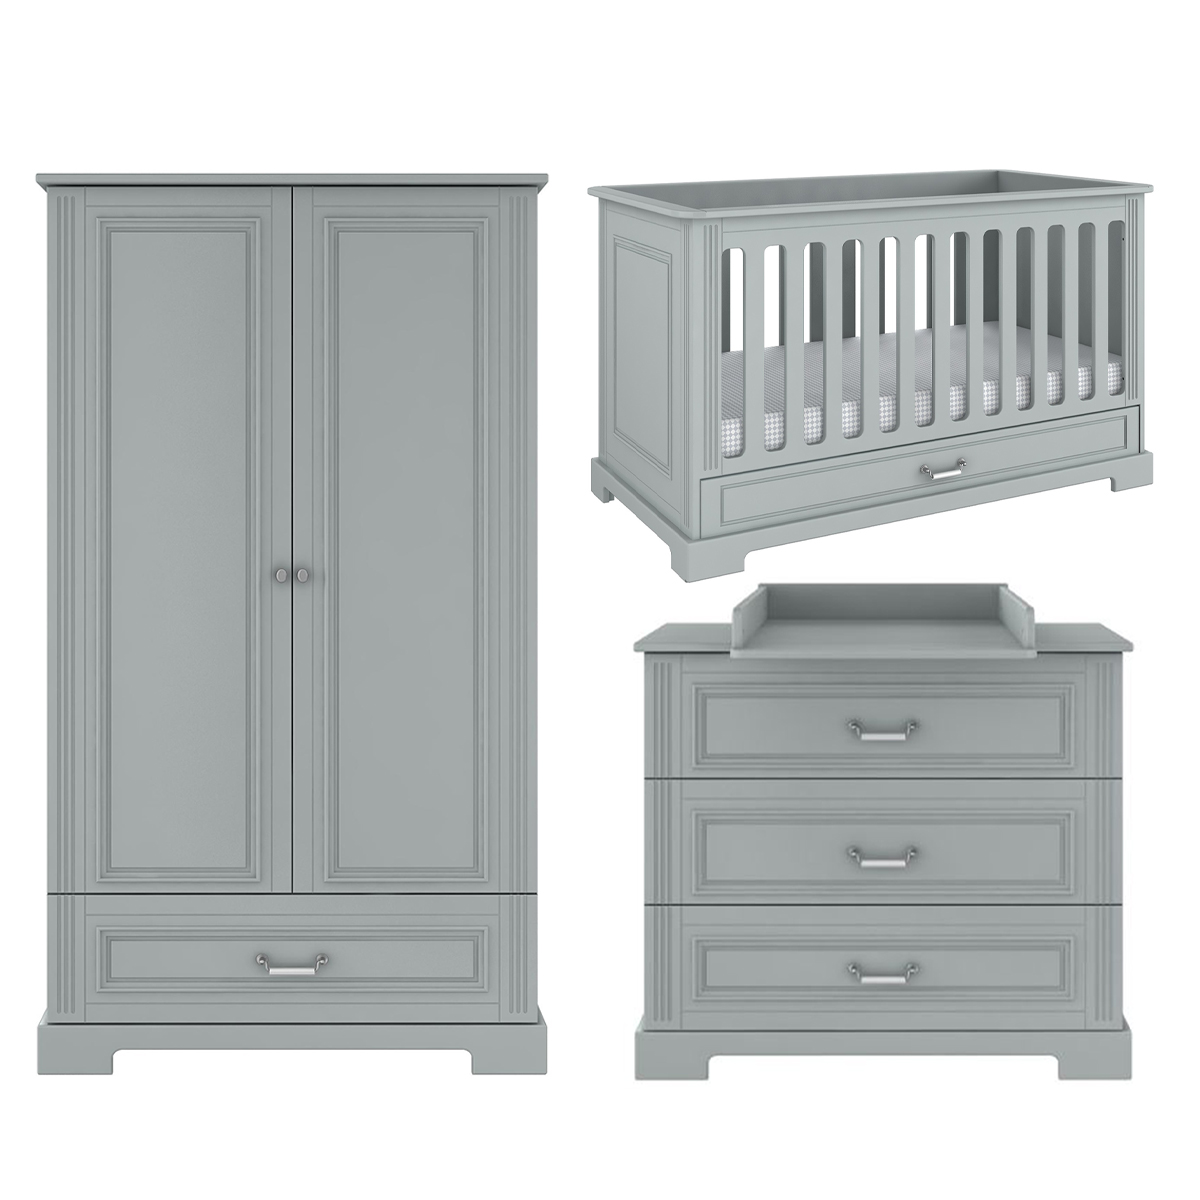 Chambre bébé : Trio - lit évolutif 70x140 commode armoire gris